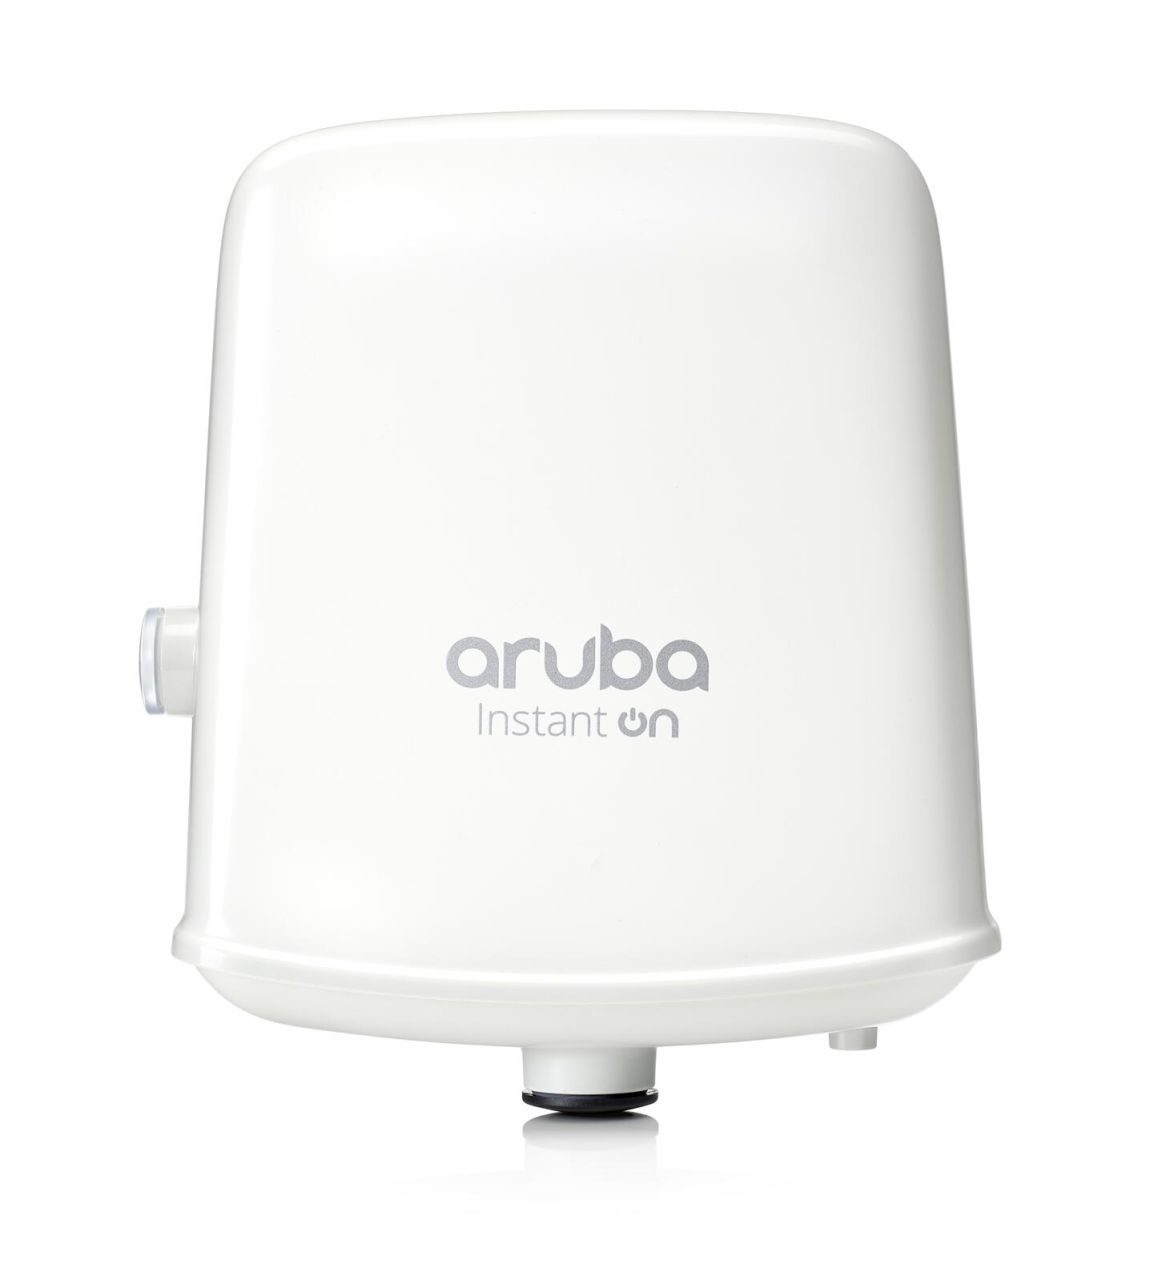 HPE Aruba Instant ON AP17 (RW) WiFi Dualband Access Point für aussen mit Bluetooth R2X11A ohne Netzteil